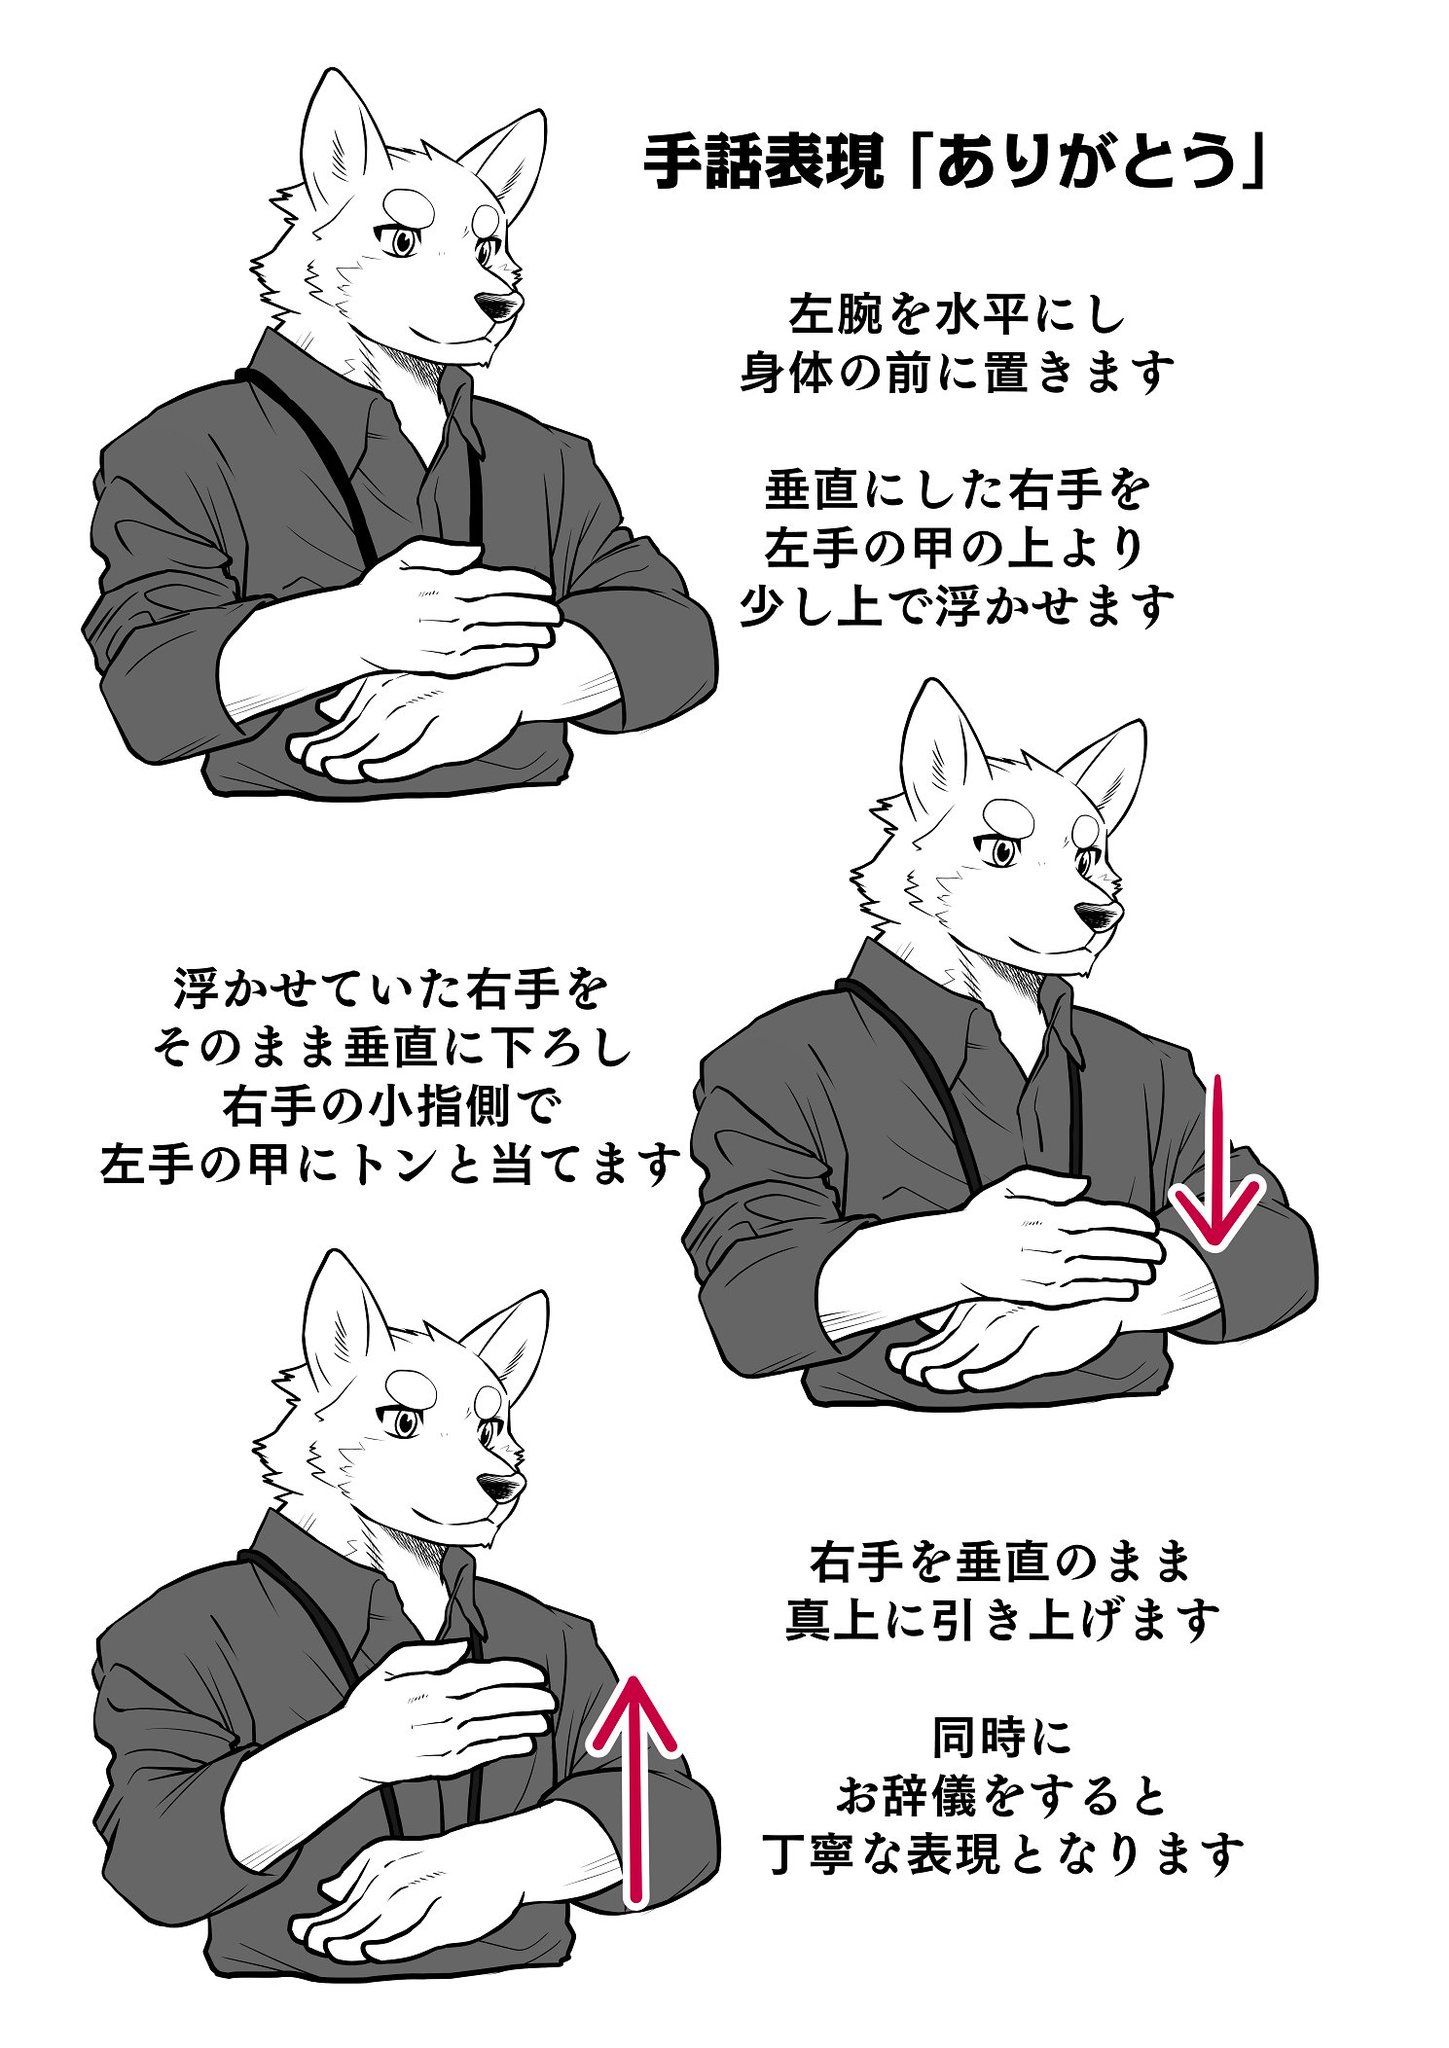 朔 今日から使える日本手話単語 ありがとう Japanese Sign Language 右利きの方はこのイラスト通りの表現で 左利きの方は左右逆の表現で問題ありません れっつ手話表現